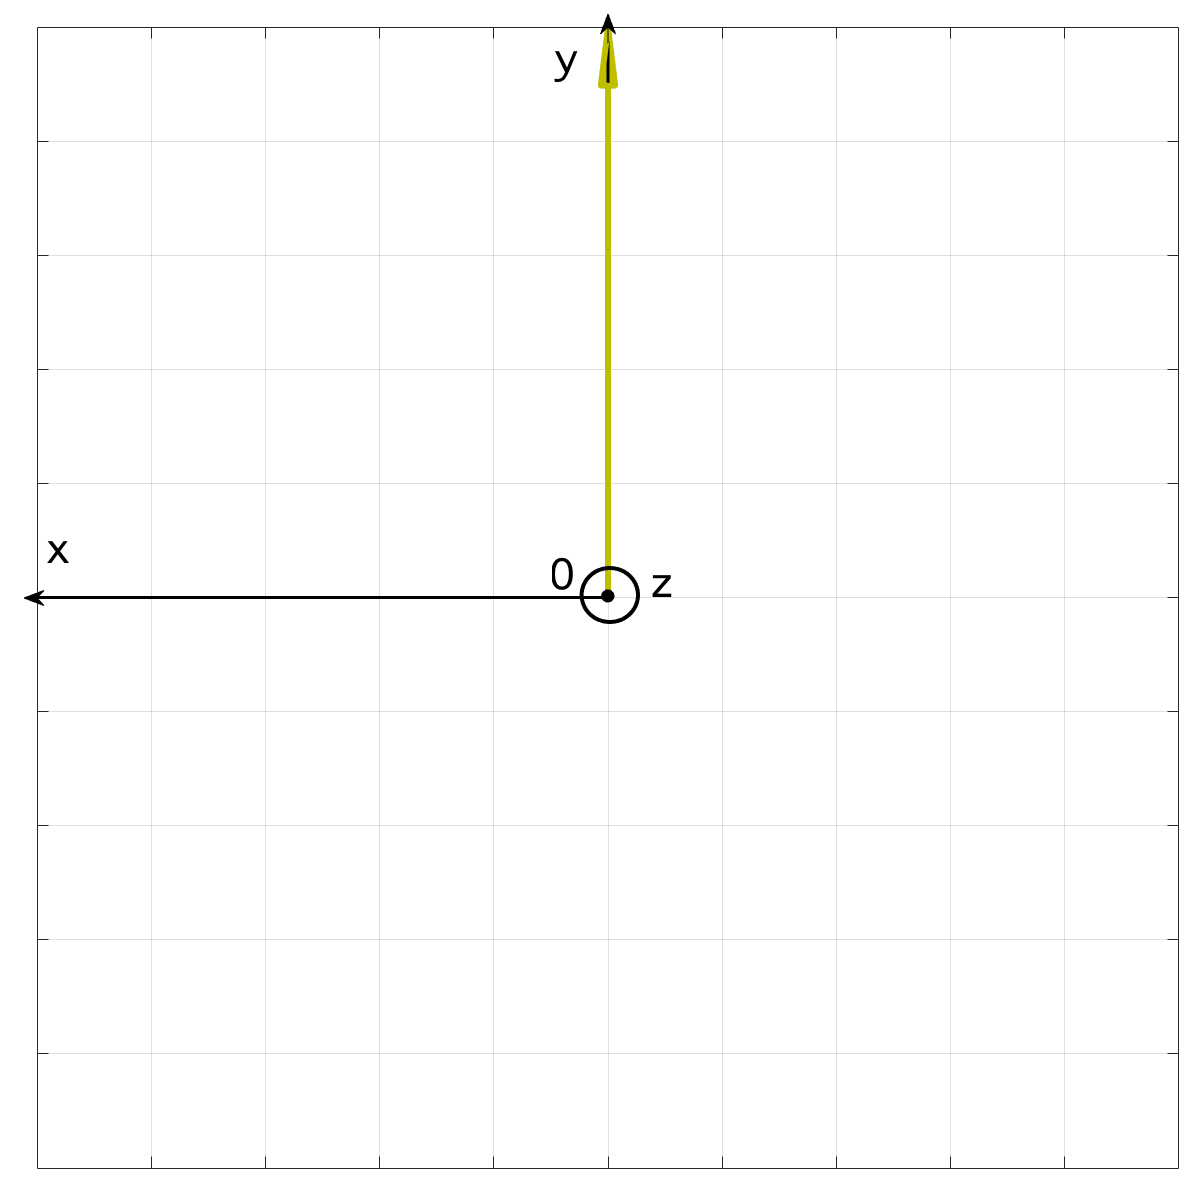 Polarisation rectiligne de la lumière - Le champ électrique \( E \) est dirigé selon l'axe Ox et se déplace selon l'axe Oz - Vue dans le plan (Oxy) - Arrêt sur image